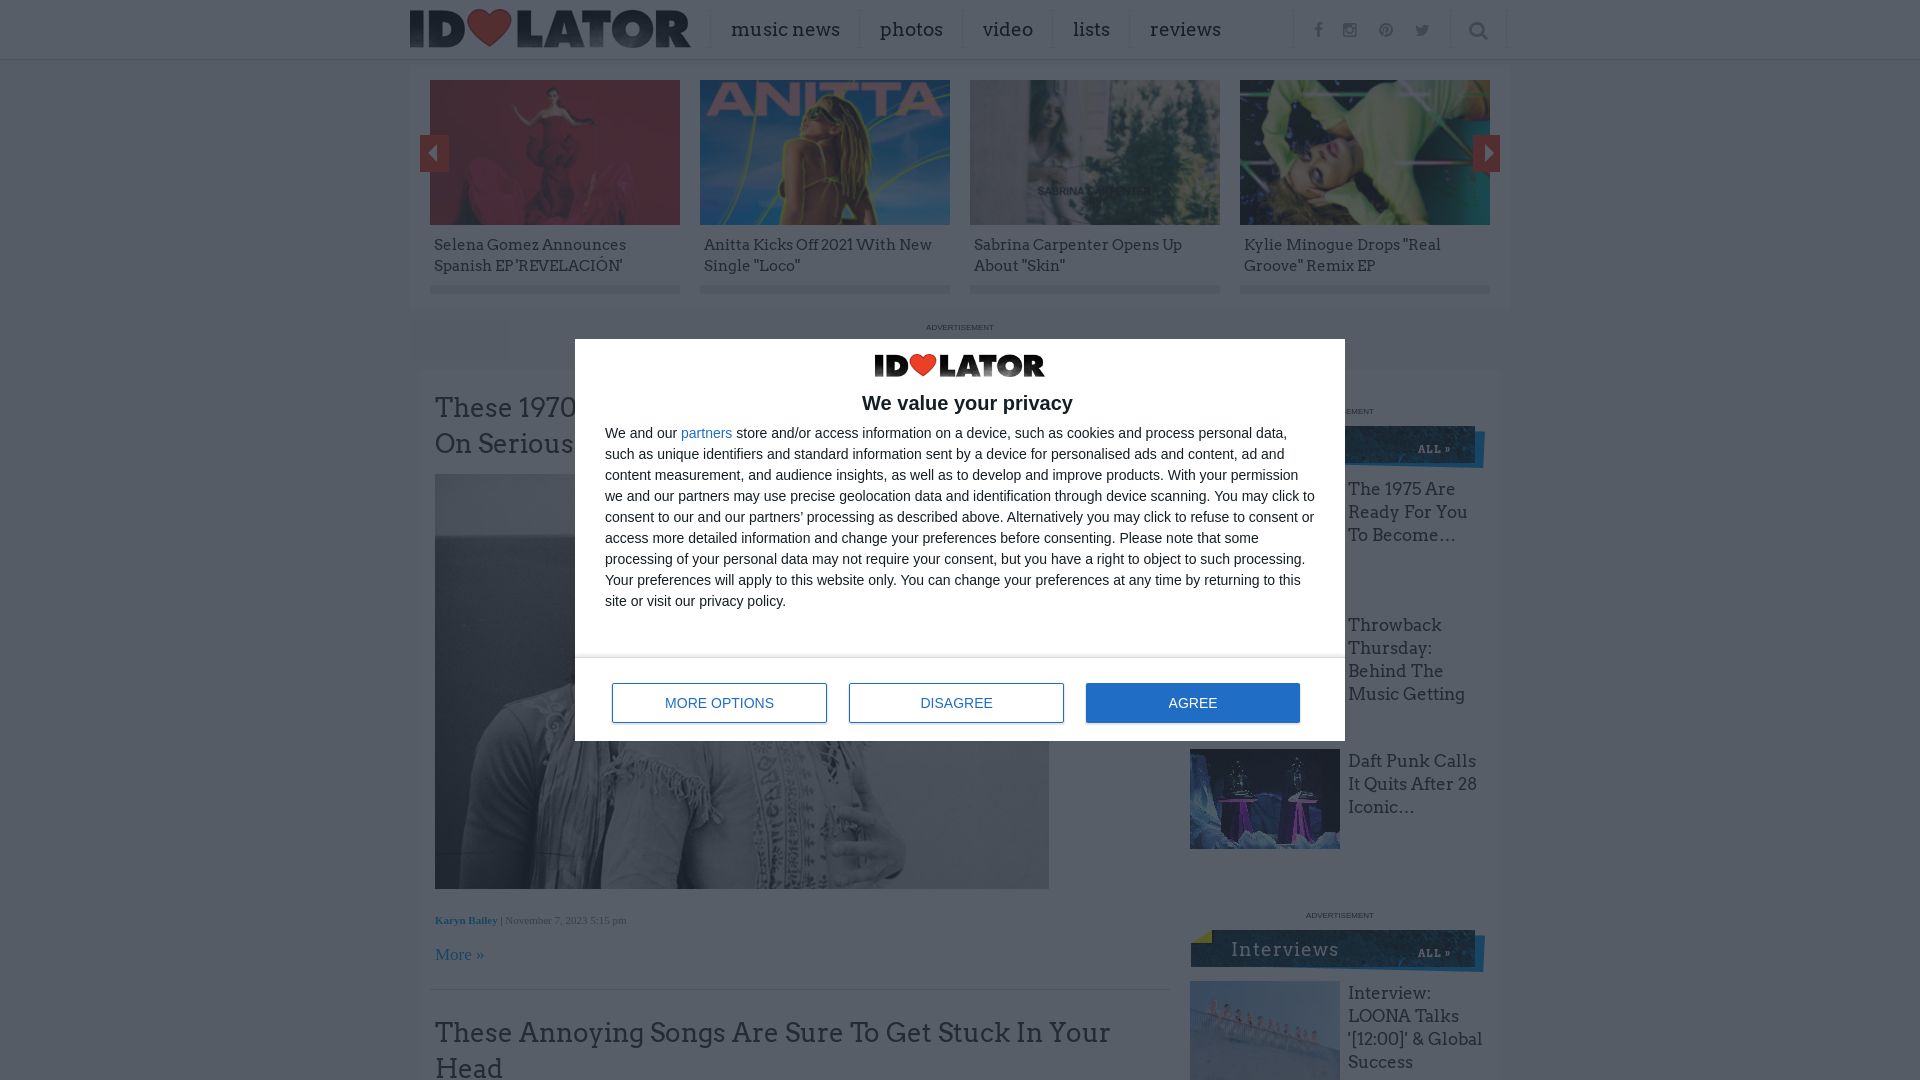 网站状态 idolator.com 是  在线的